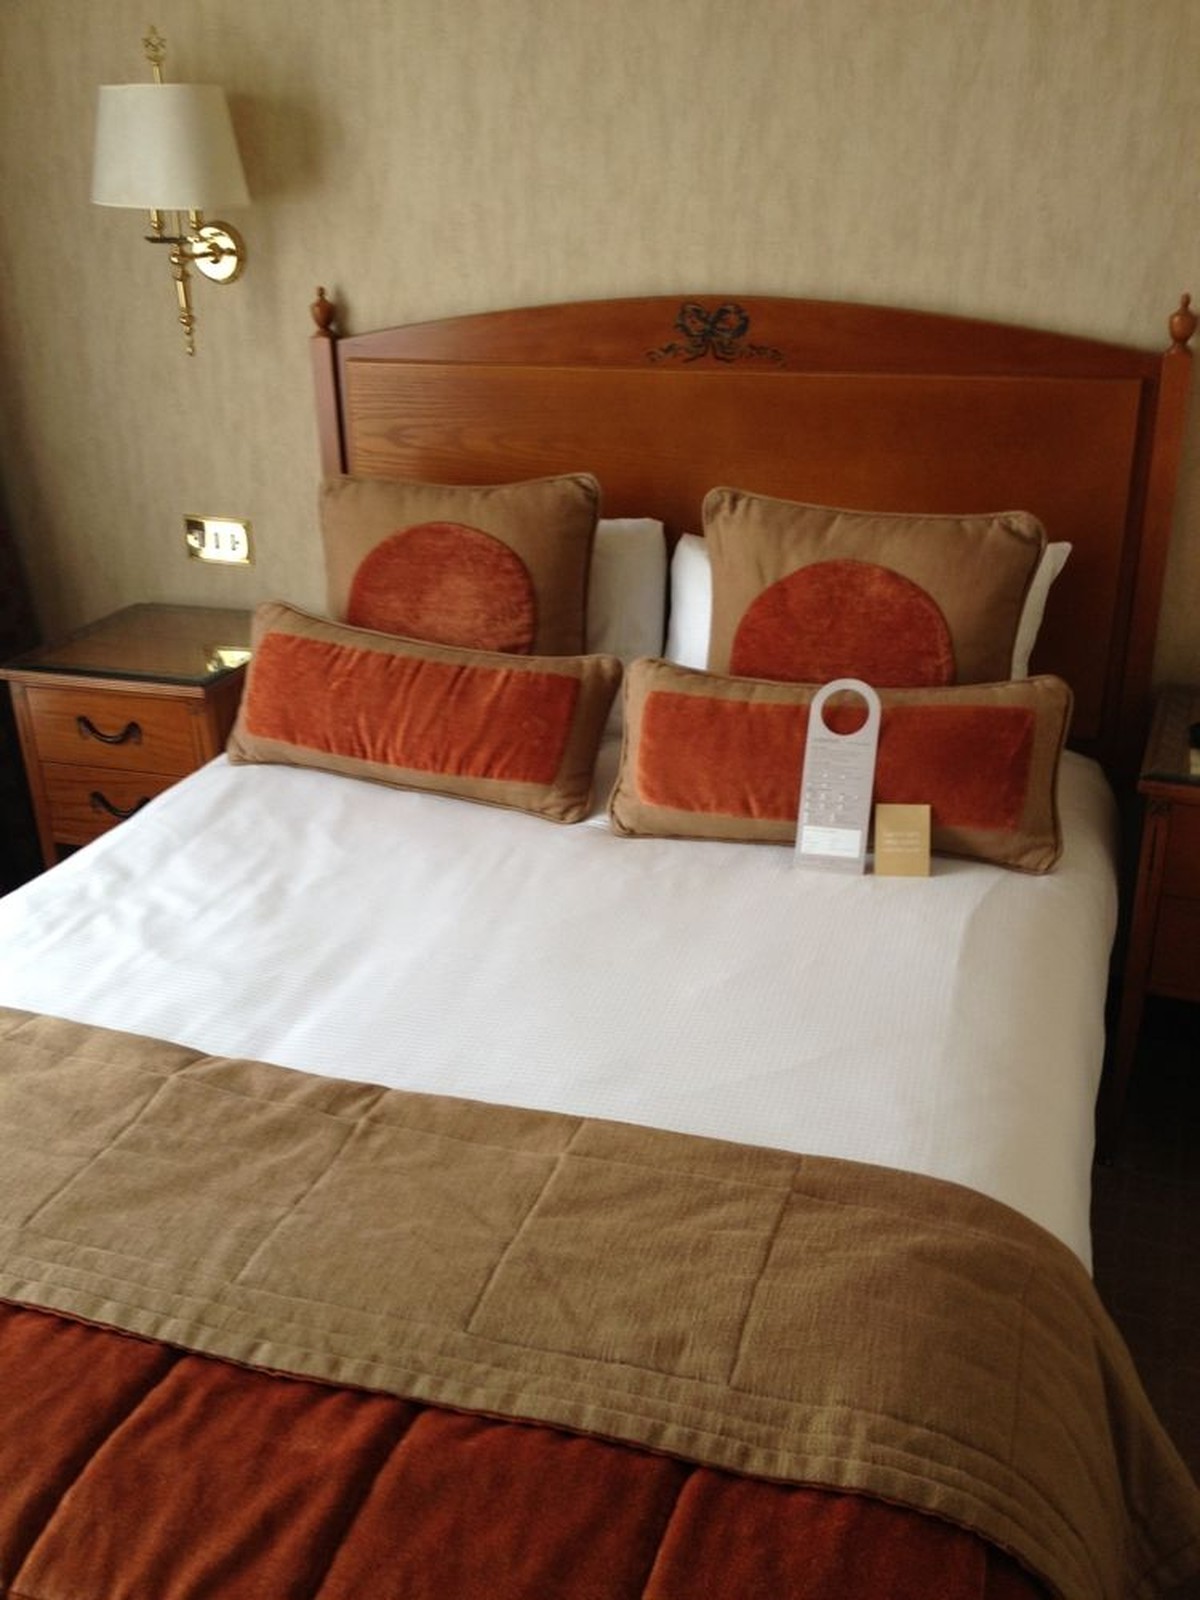 Secondhand Hotel Furniture | Hotel Bedroom Sets | 7x Identical Matching Hotel Bedroom Furniture ...